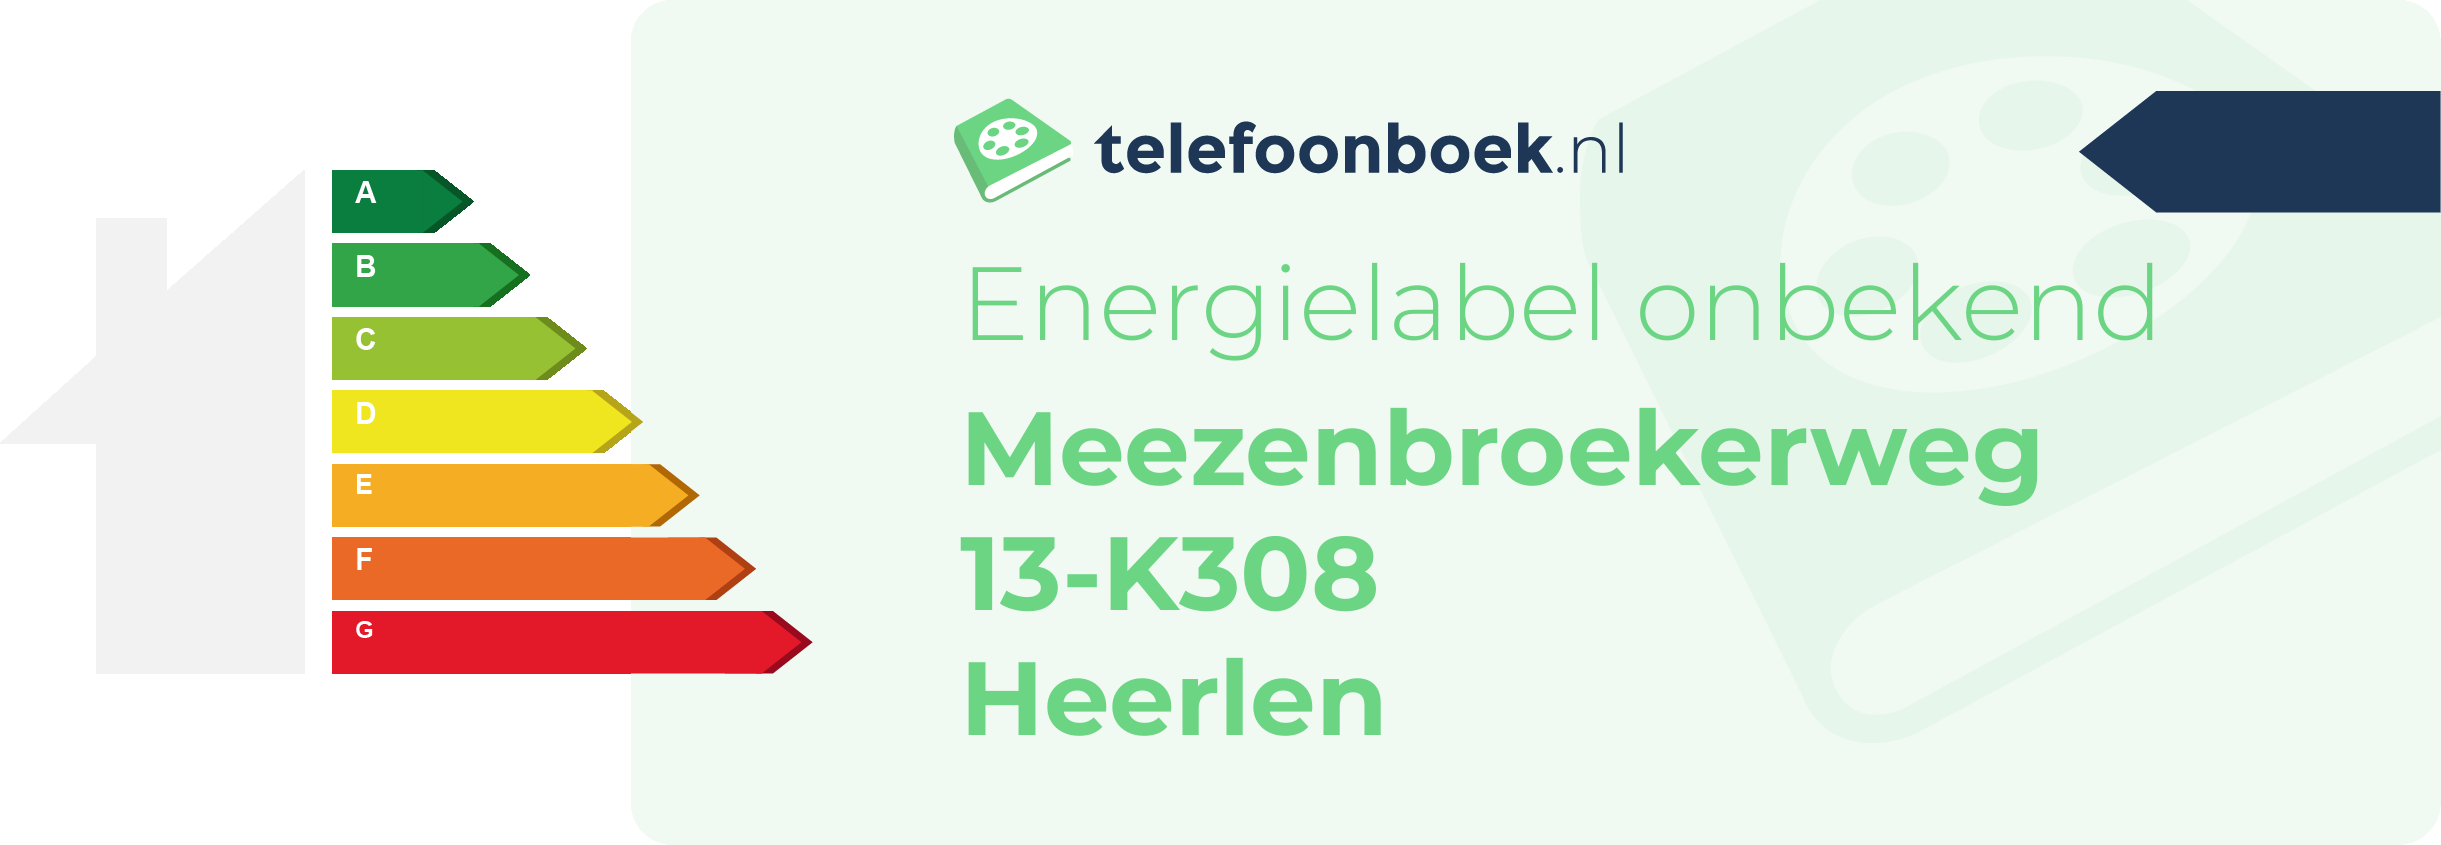 Energielabel Meezenbroekerweg 13-K308 Heerlen